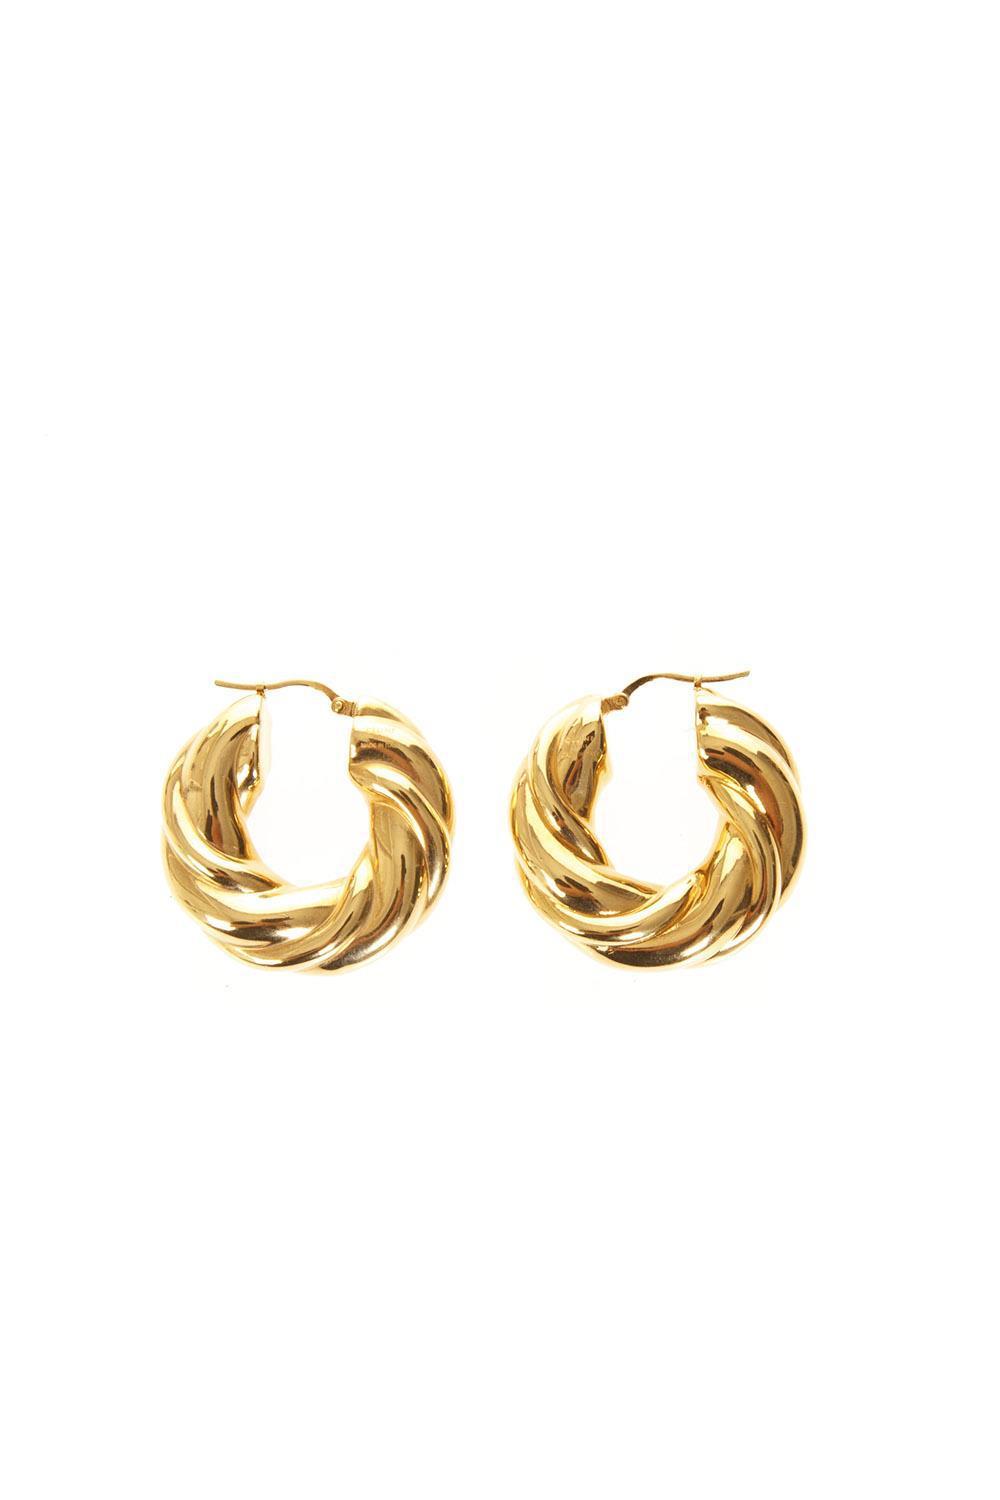 Celine Braided Effect Hoop Earrings in Metallic